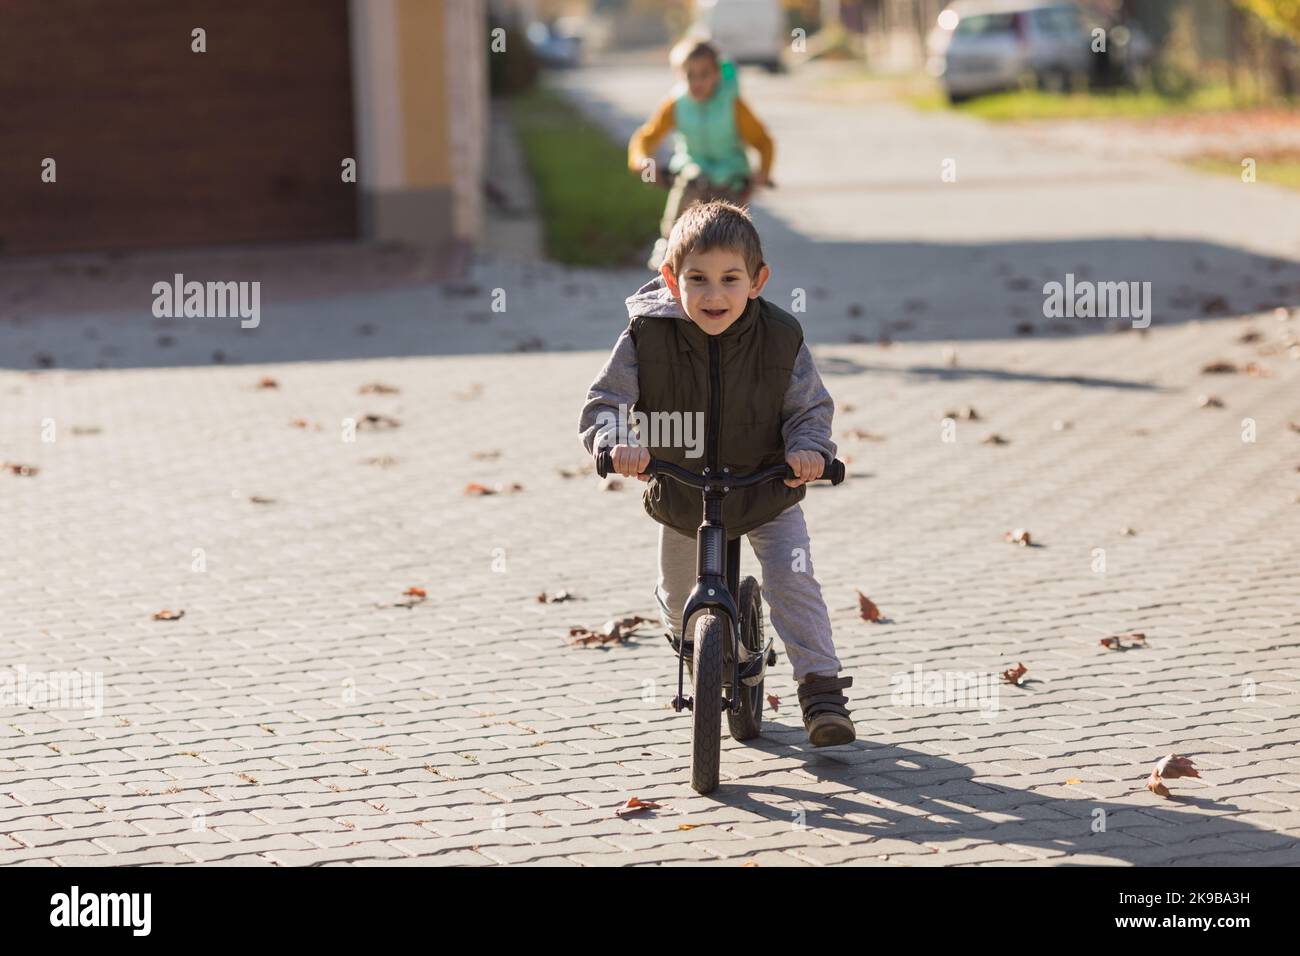 Junge am Fahrrad läuft auf der Straße Stockfoto